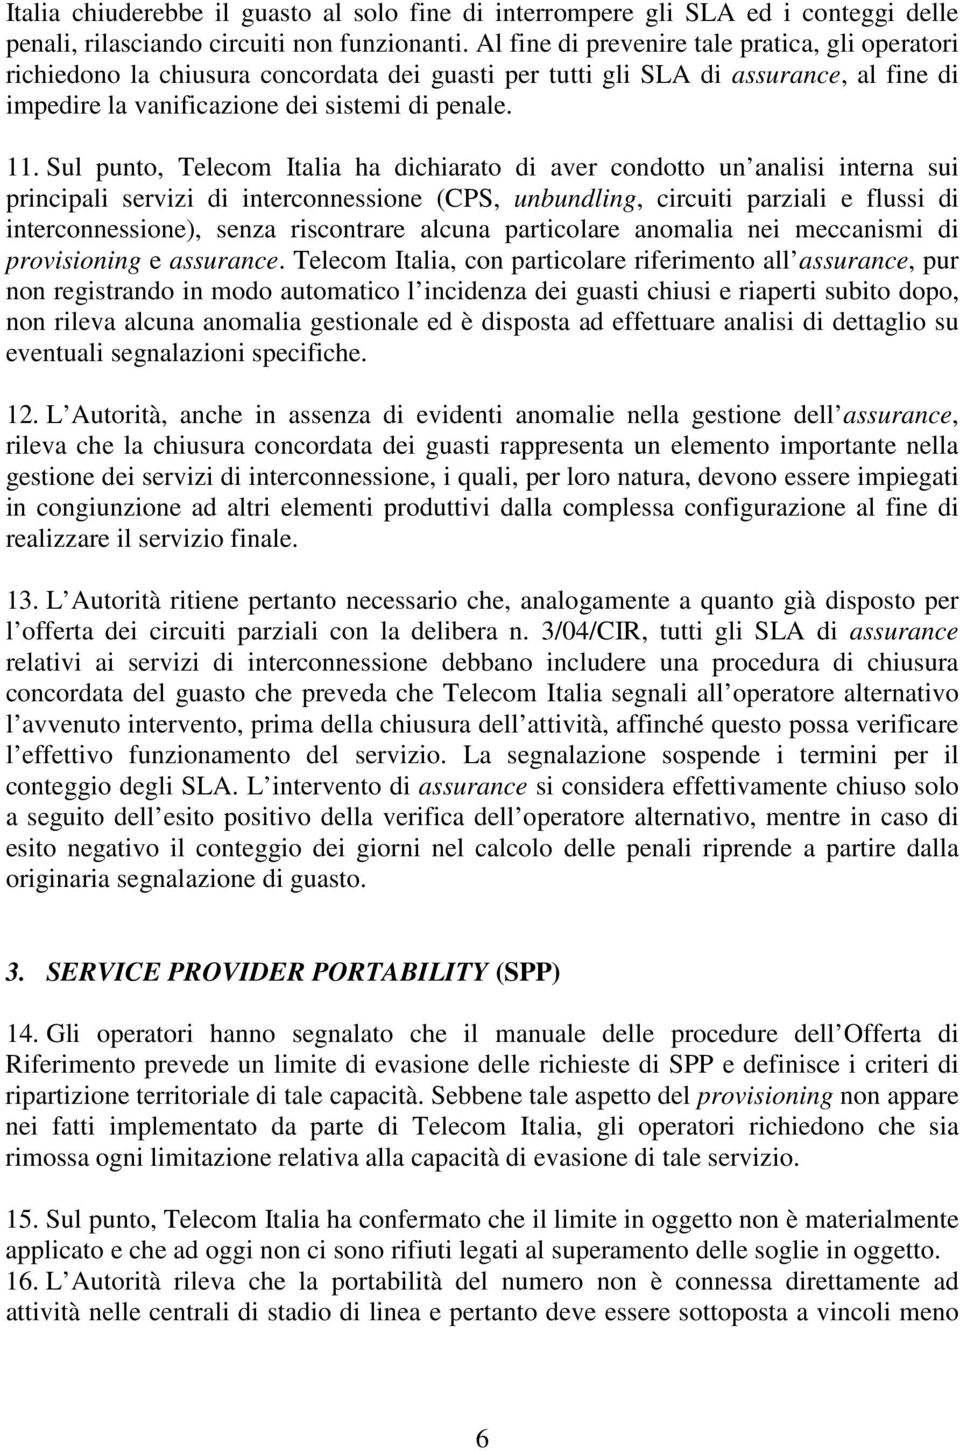 Sul punto, Telecom Italia ha dichiarato di aver condotto un analisi interna sui principali servizi di interconnessione (CPS, unbundling, circuiti parziali e flussi di interconnessione), senza